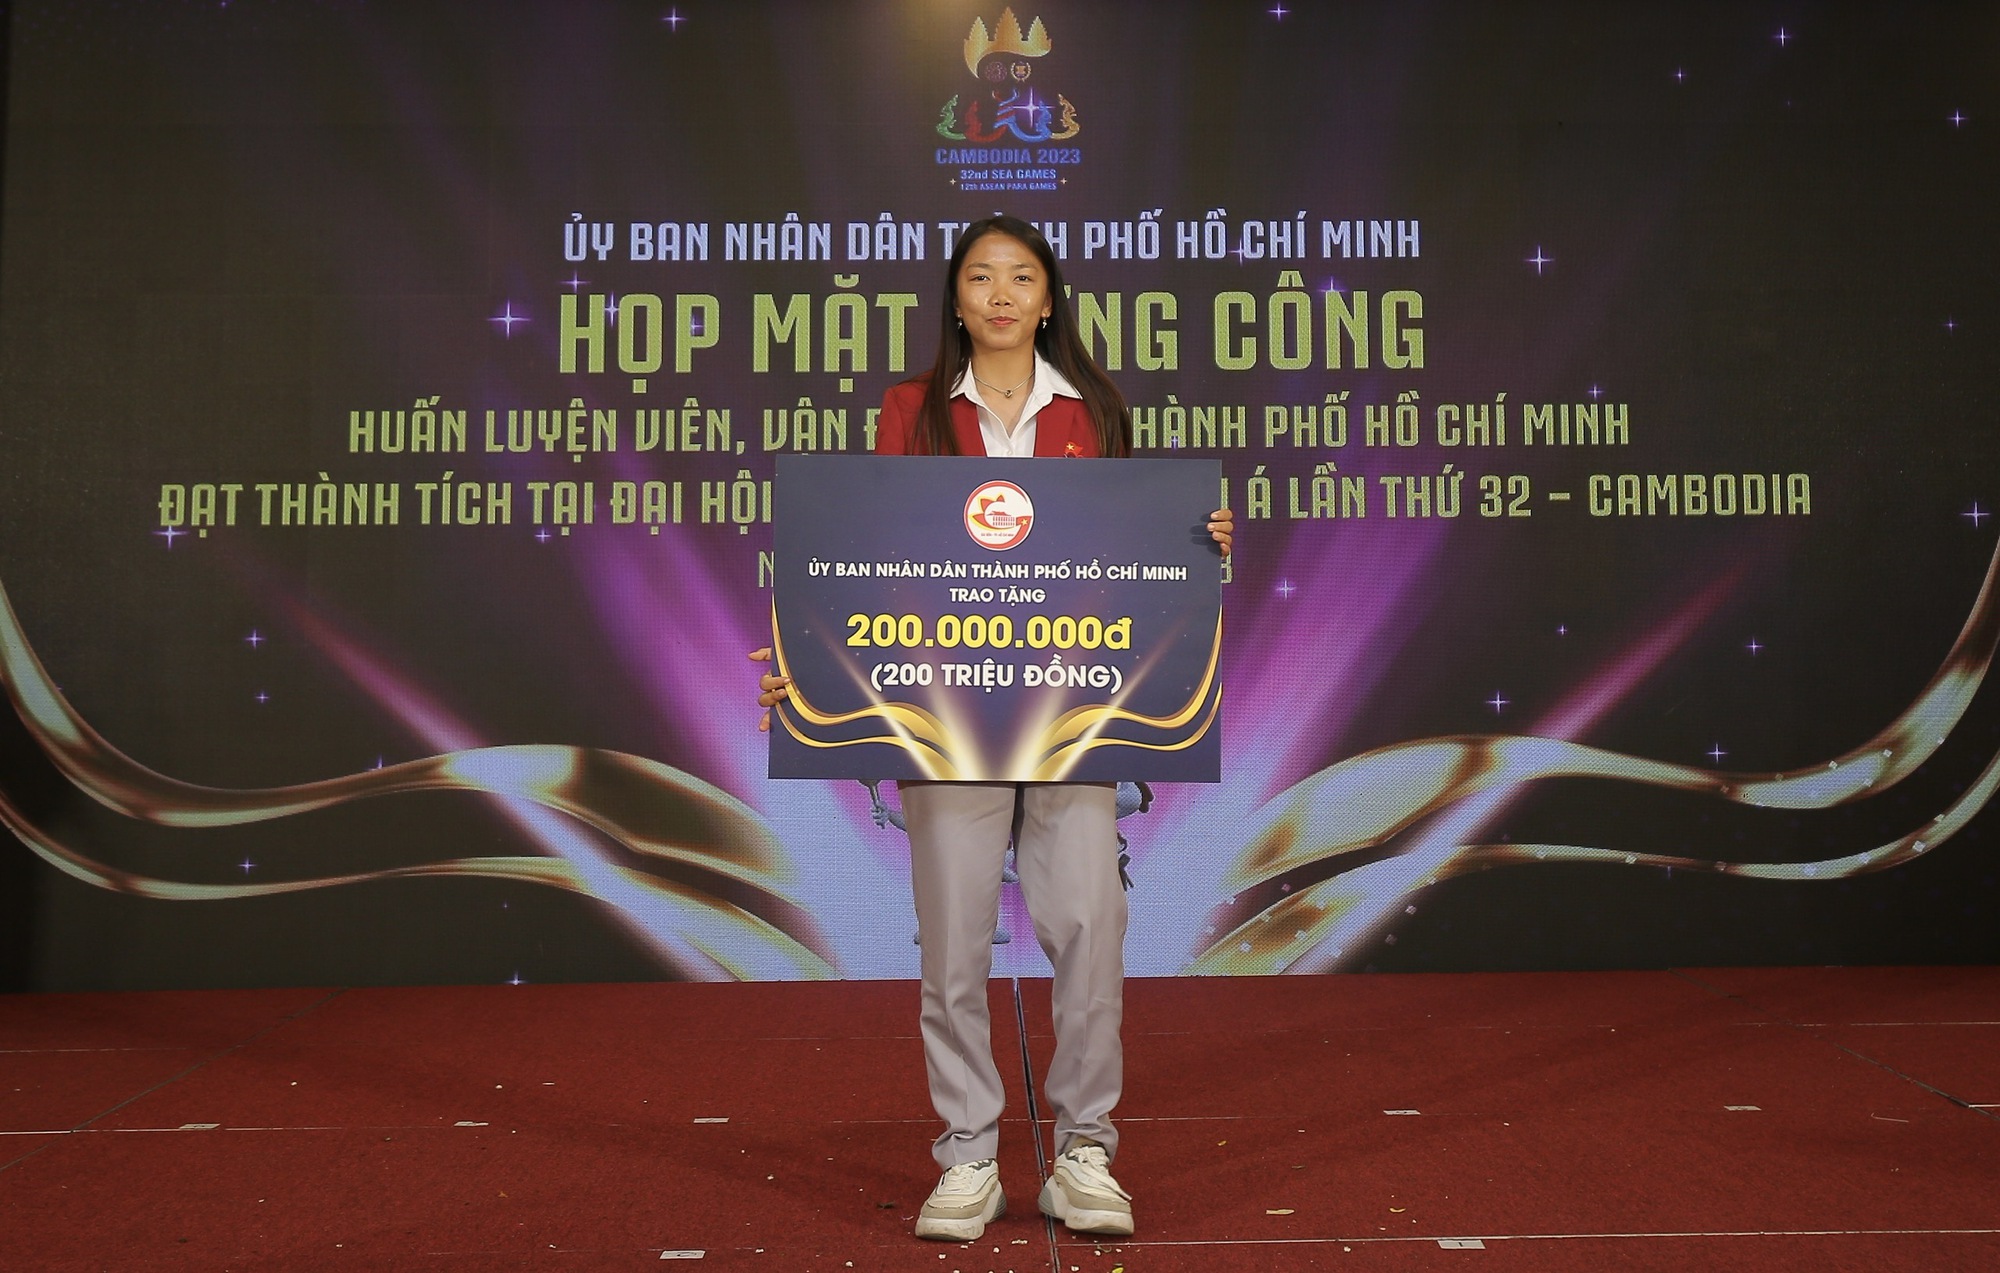 Huỳnh Như nhận phần thưởng đặc biệt trong lễ mừng công của thể thao TP.HCM - Ảnh 1.